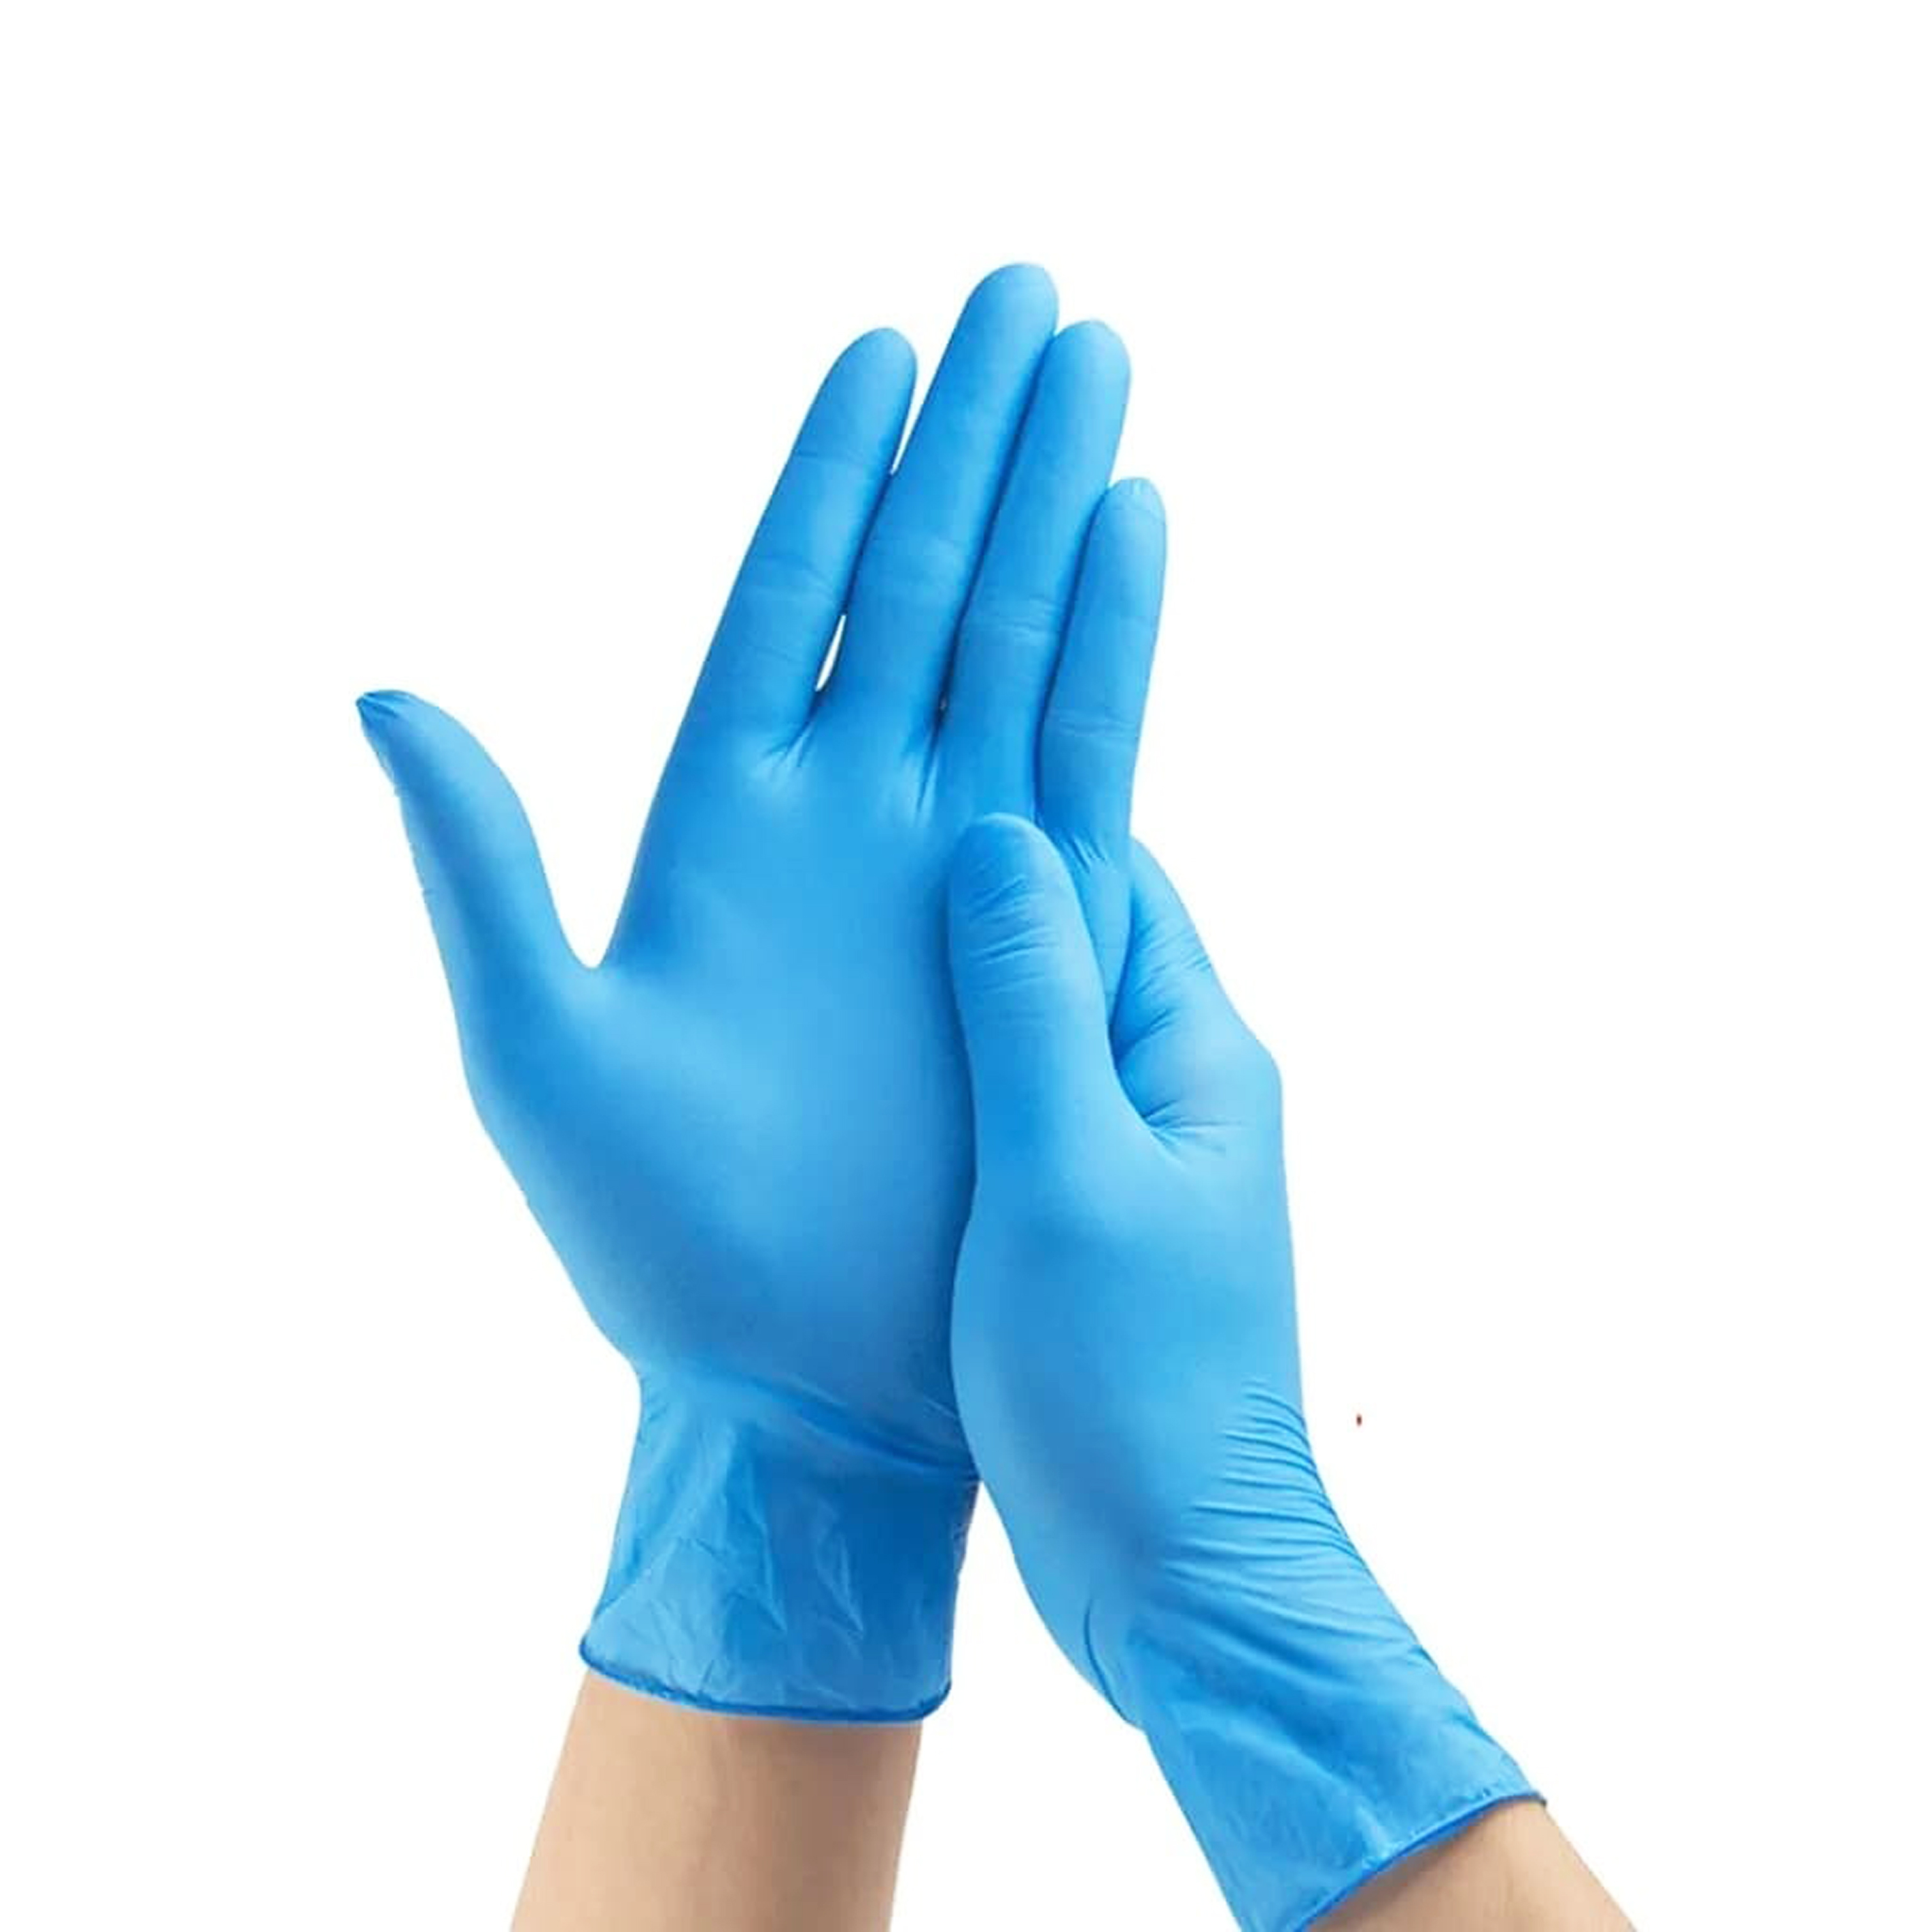 Перчатки нитровиниловые голубые размер L 100шт ALPHA